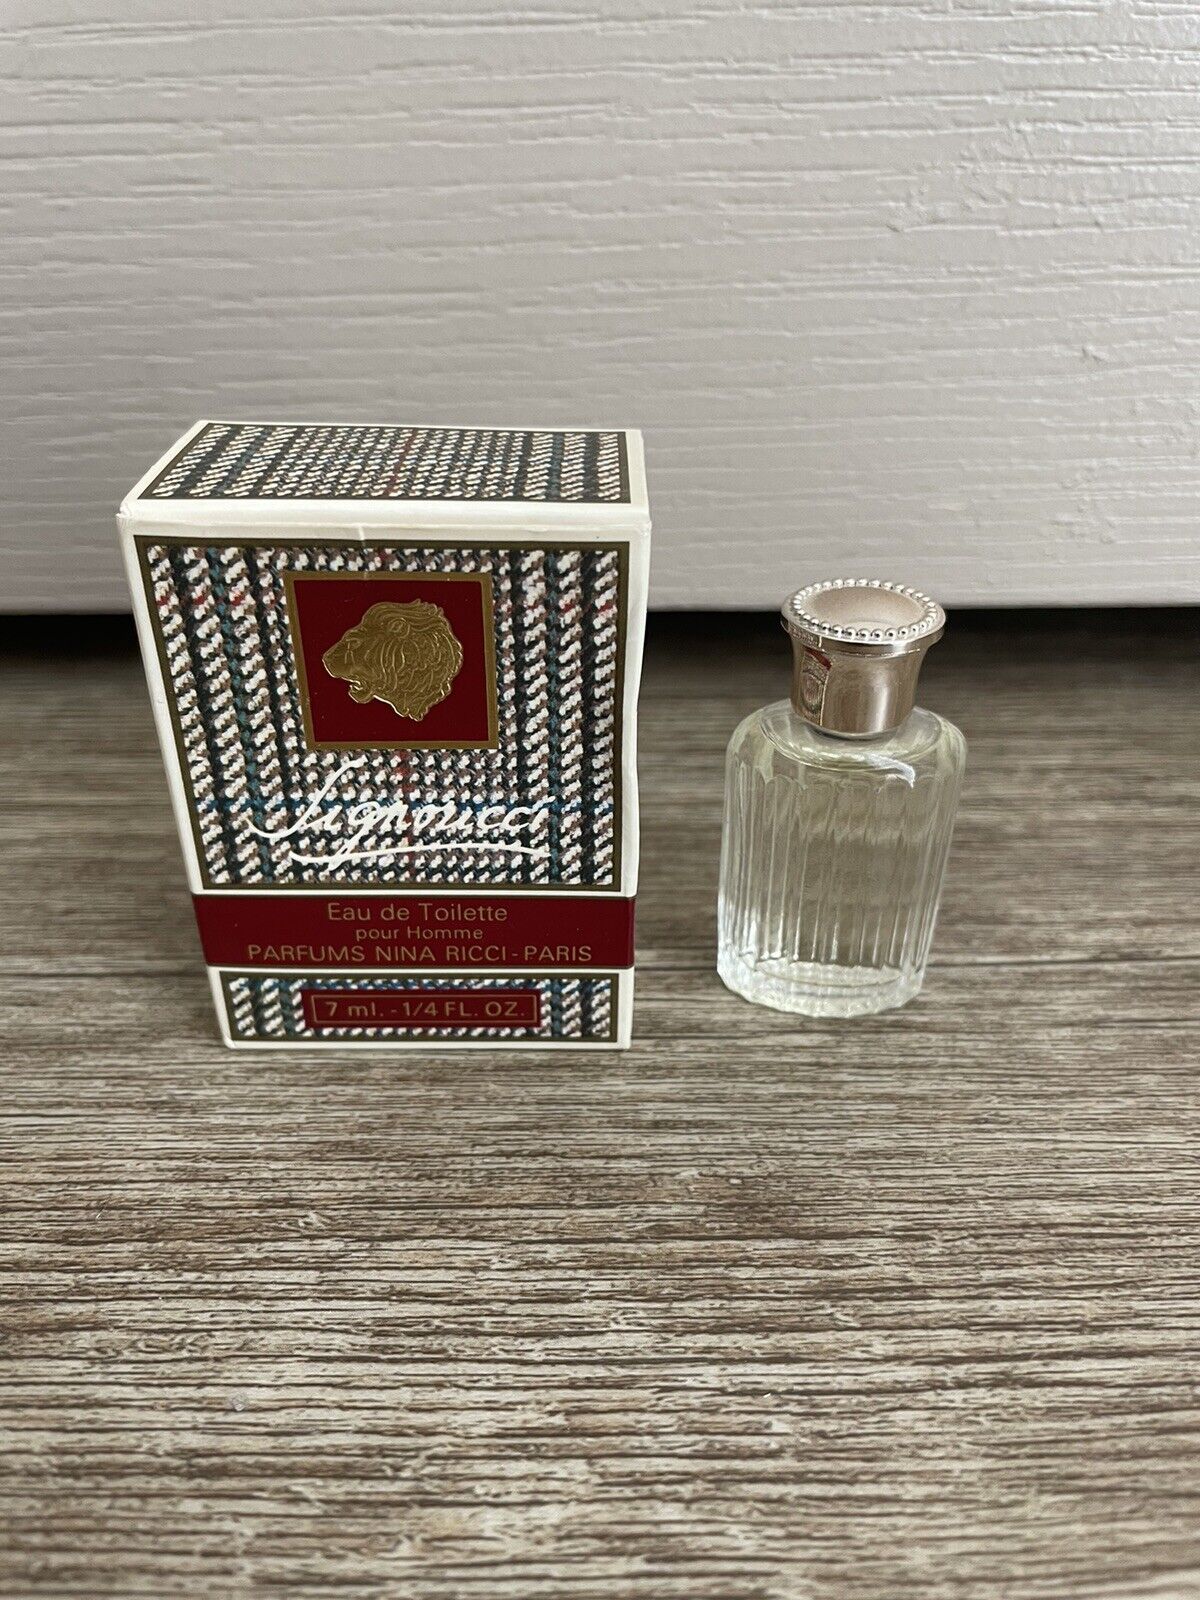 VINTAGE NINA RICCI-PARIS SIGNORICCI 7ml -1/4 oz. EAU DE TOILETTE PARFUME Perfume